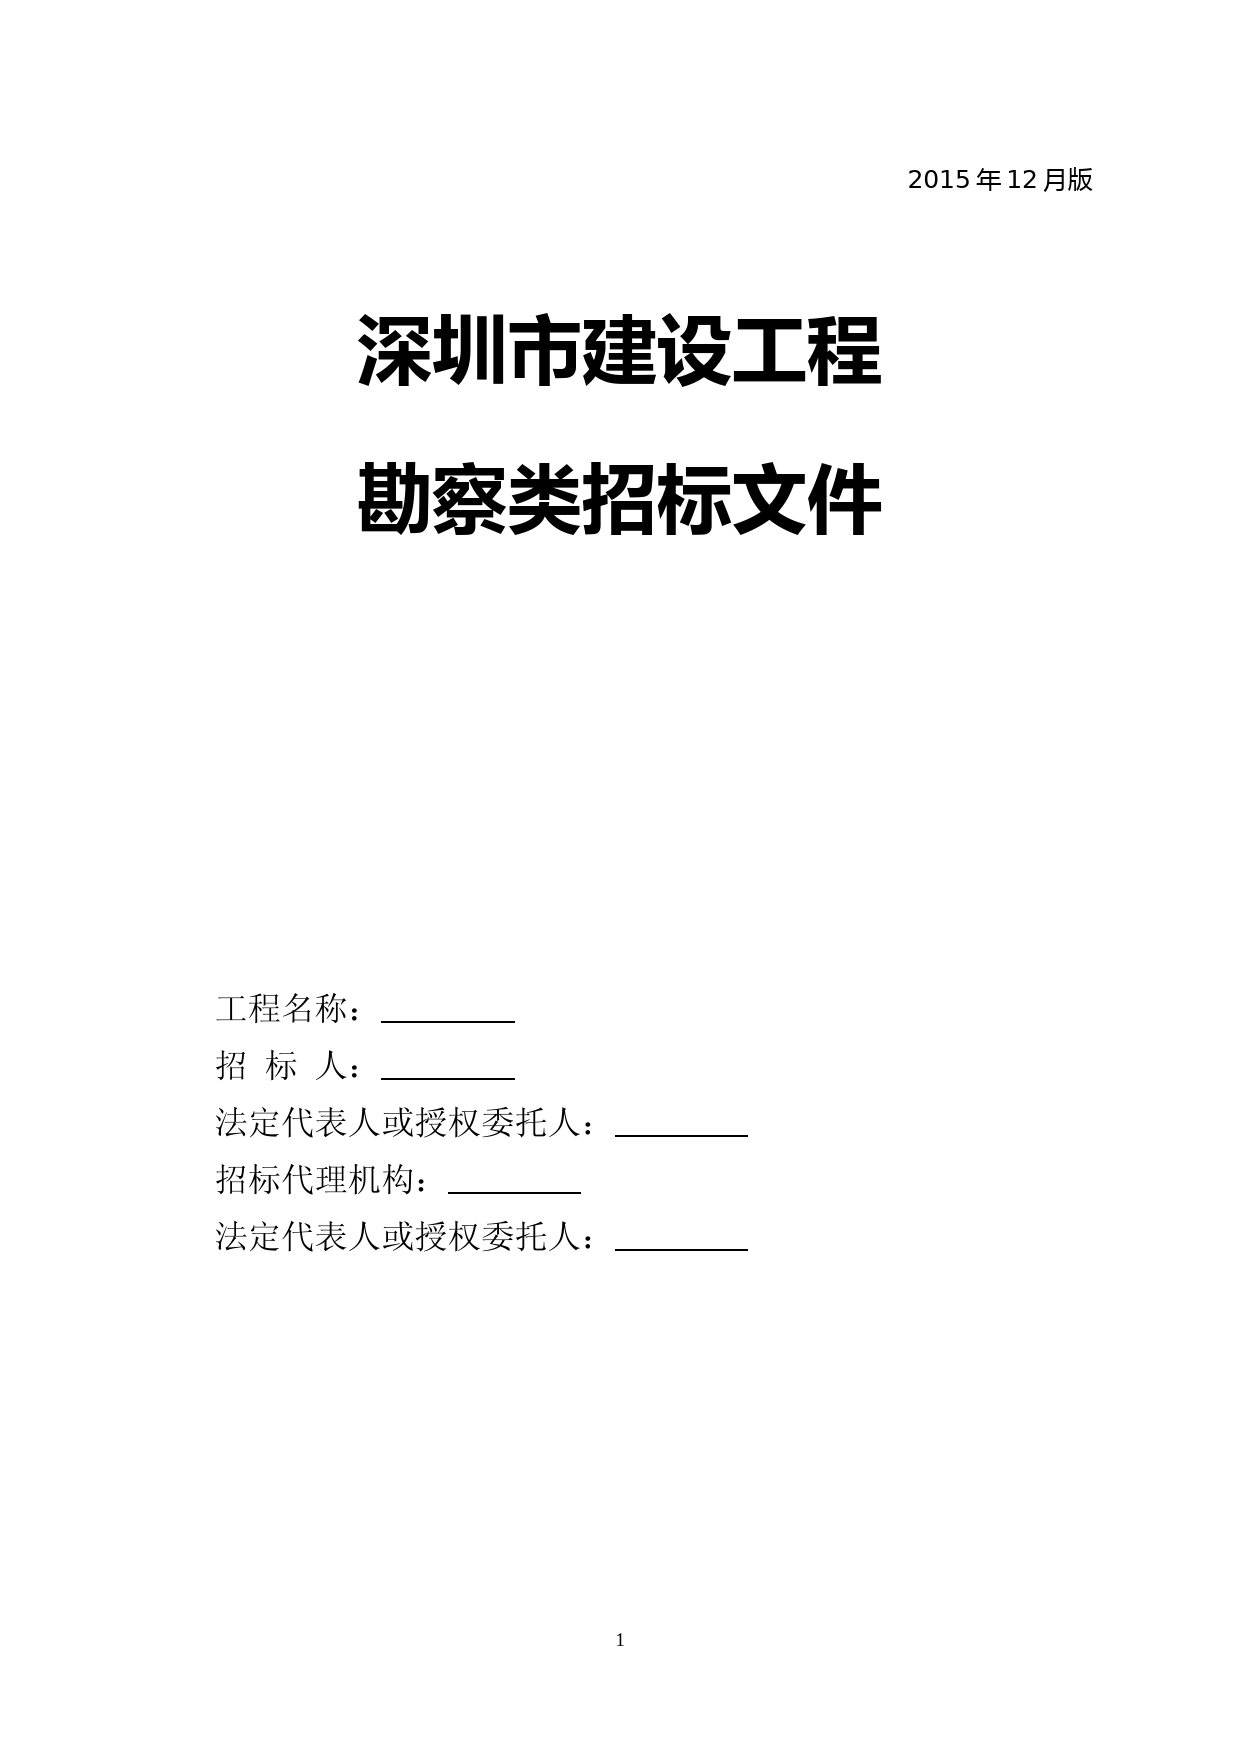 深圳市建设工程勘察类招标文件范本2015.12版